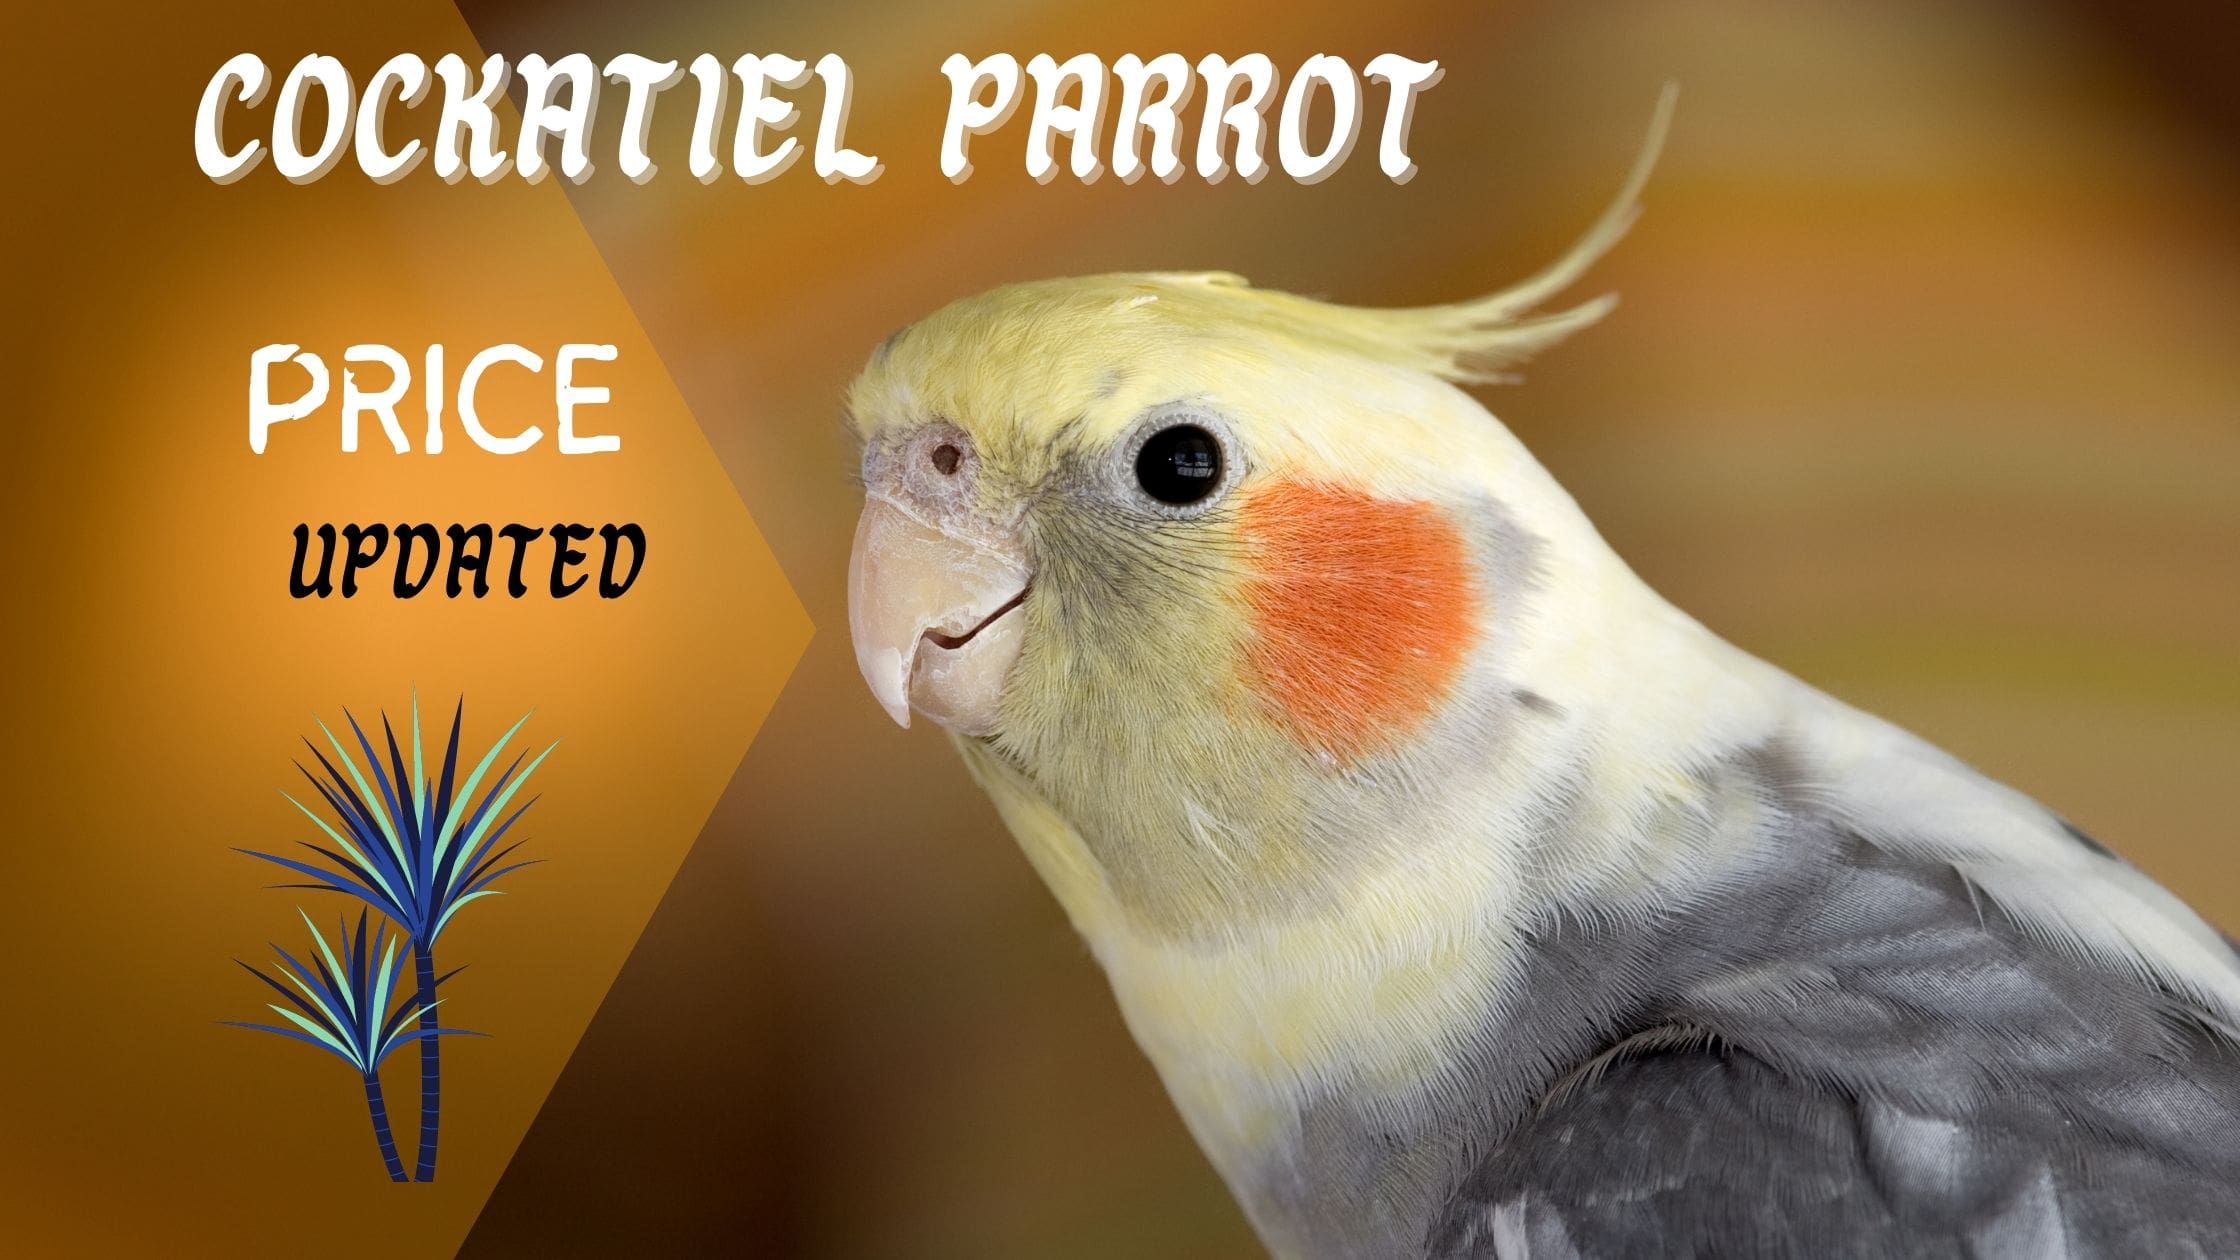 Cockatiel Parrot Price Mega Low Guide (2022) - Parrots for Sale